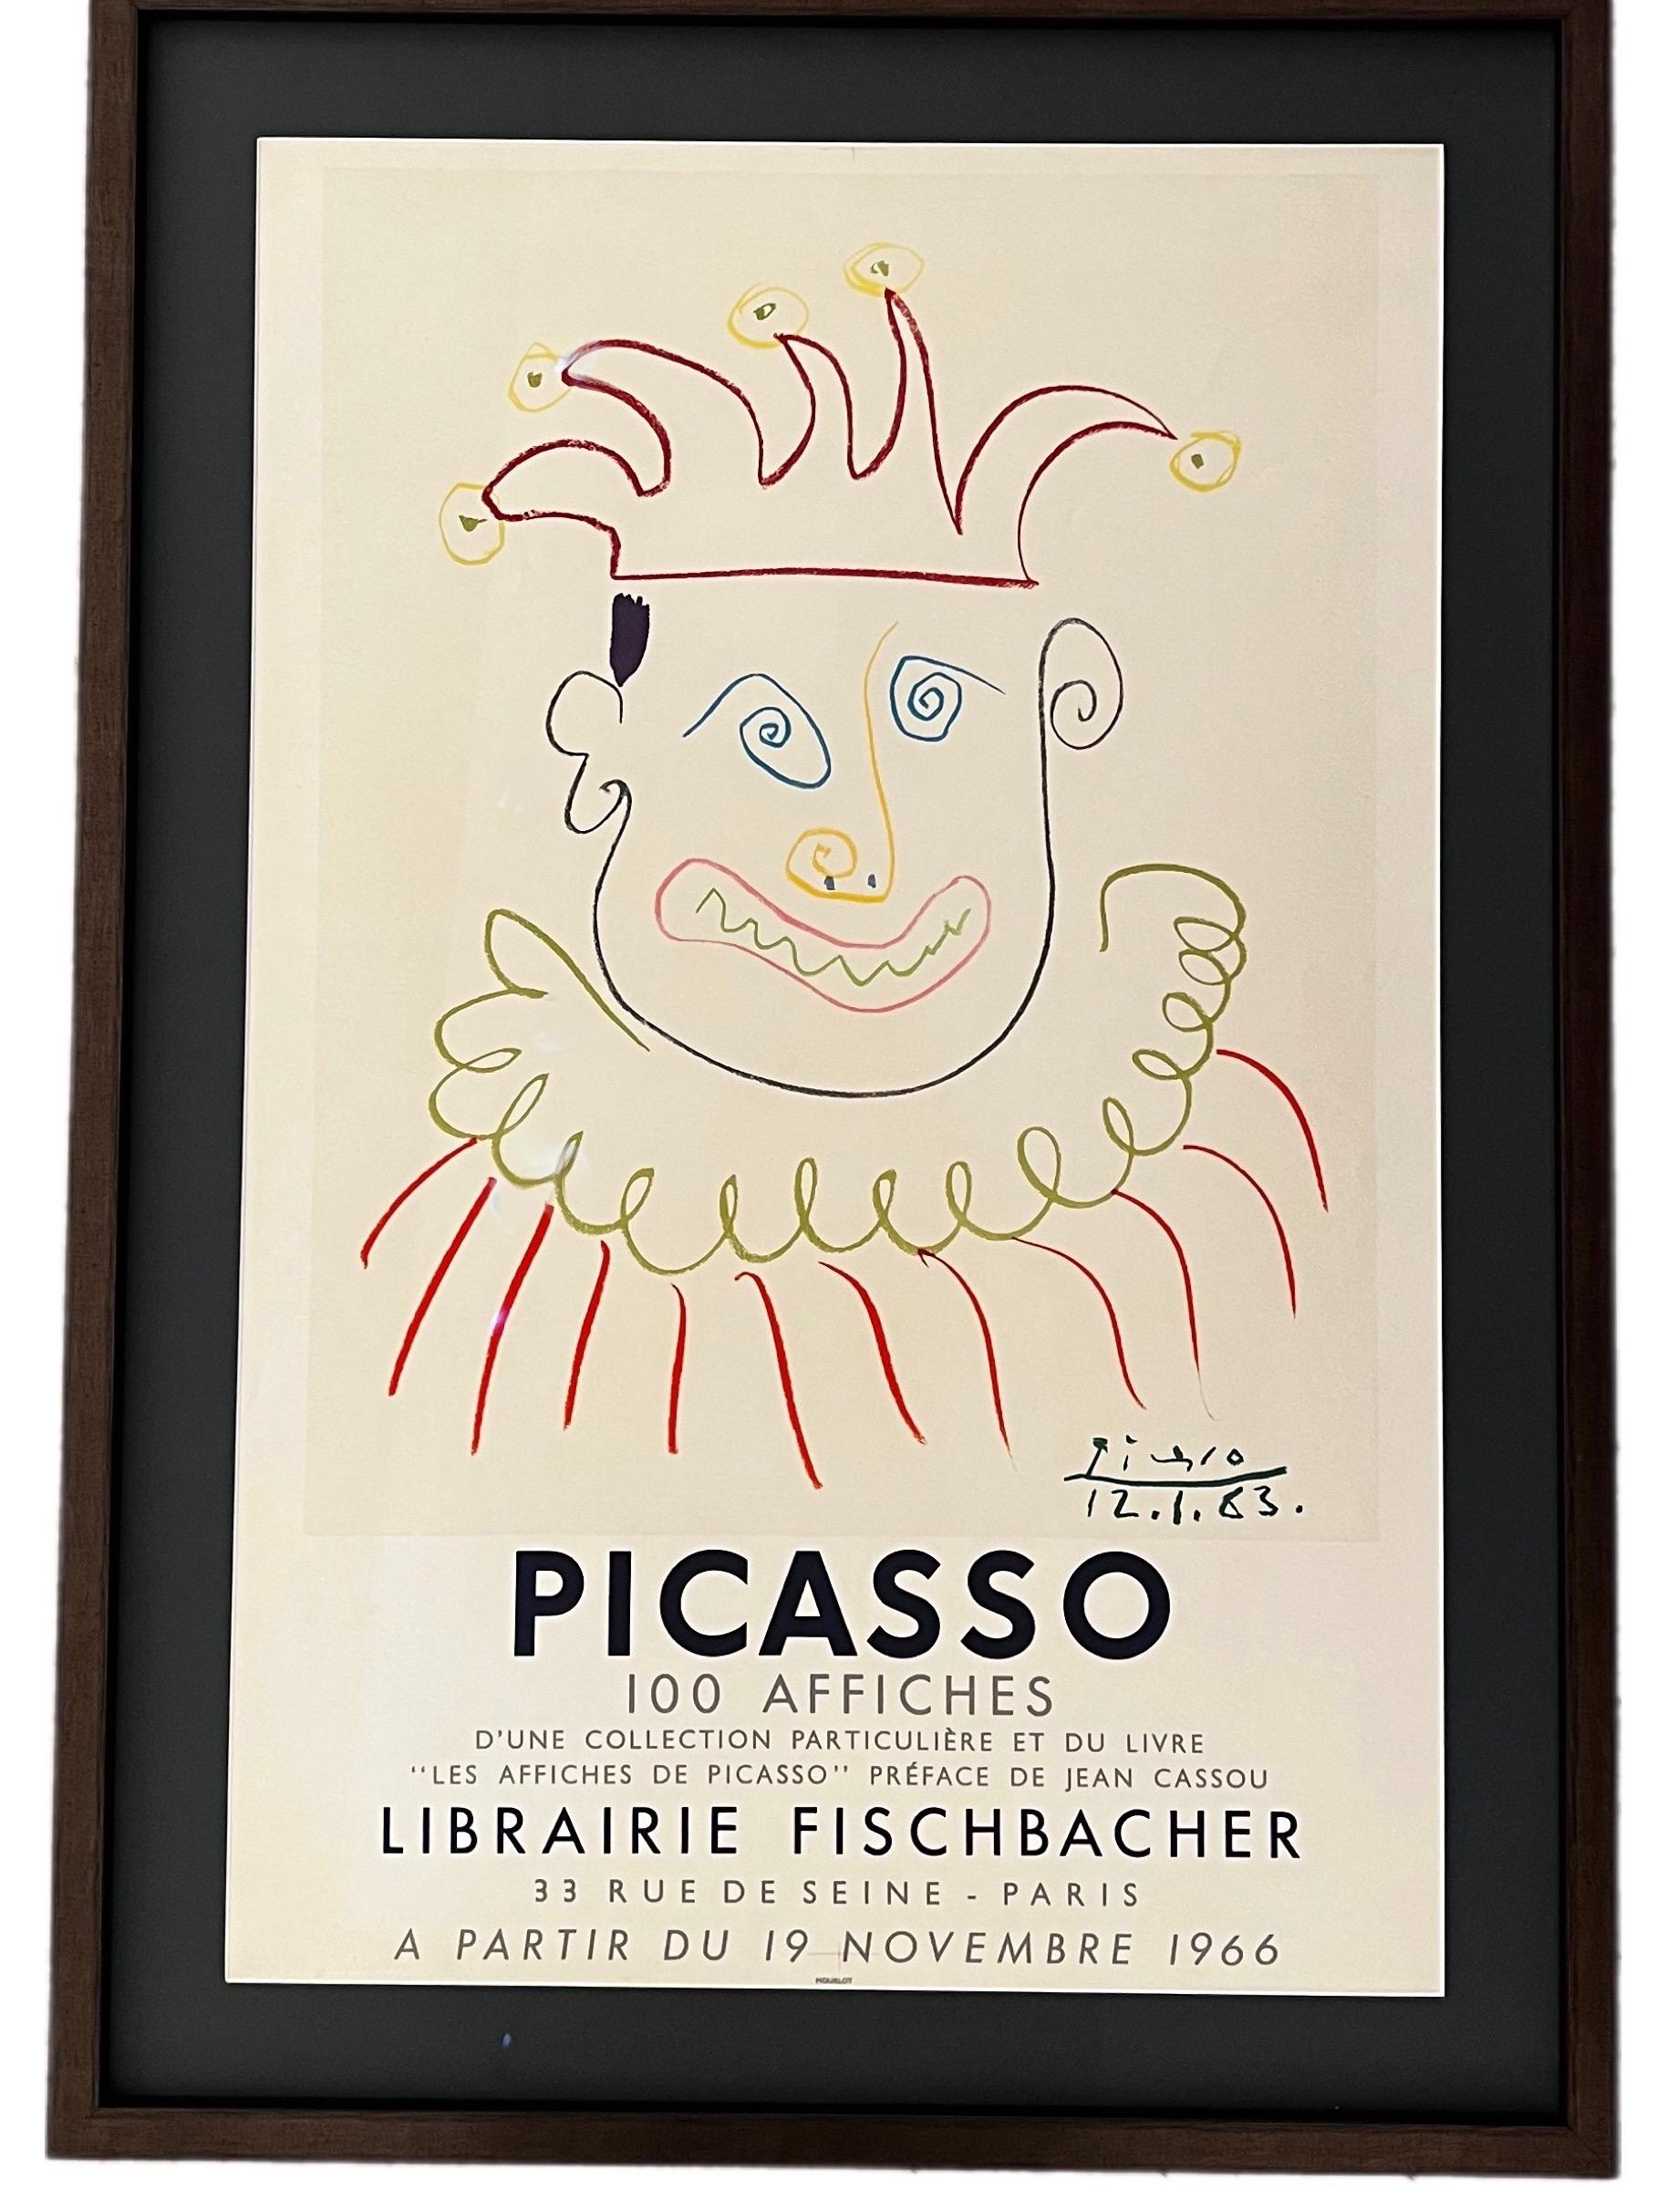 Affiche pour la Librairie Fischbachter Parisa - attractive unique Picasso piece - Print by Pablo Picasso